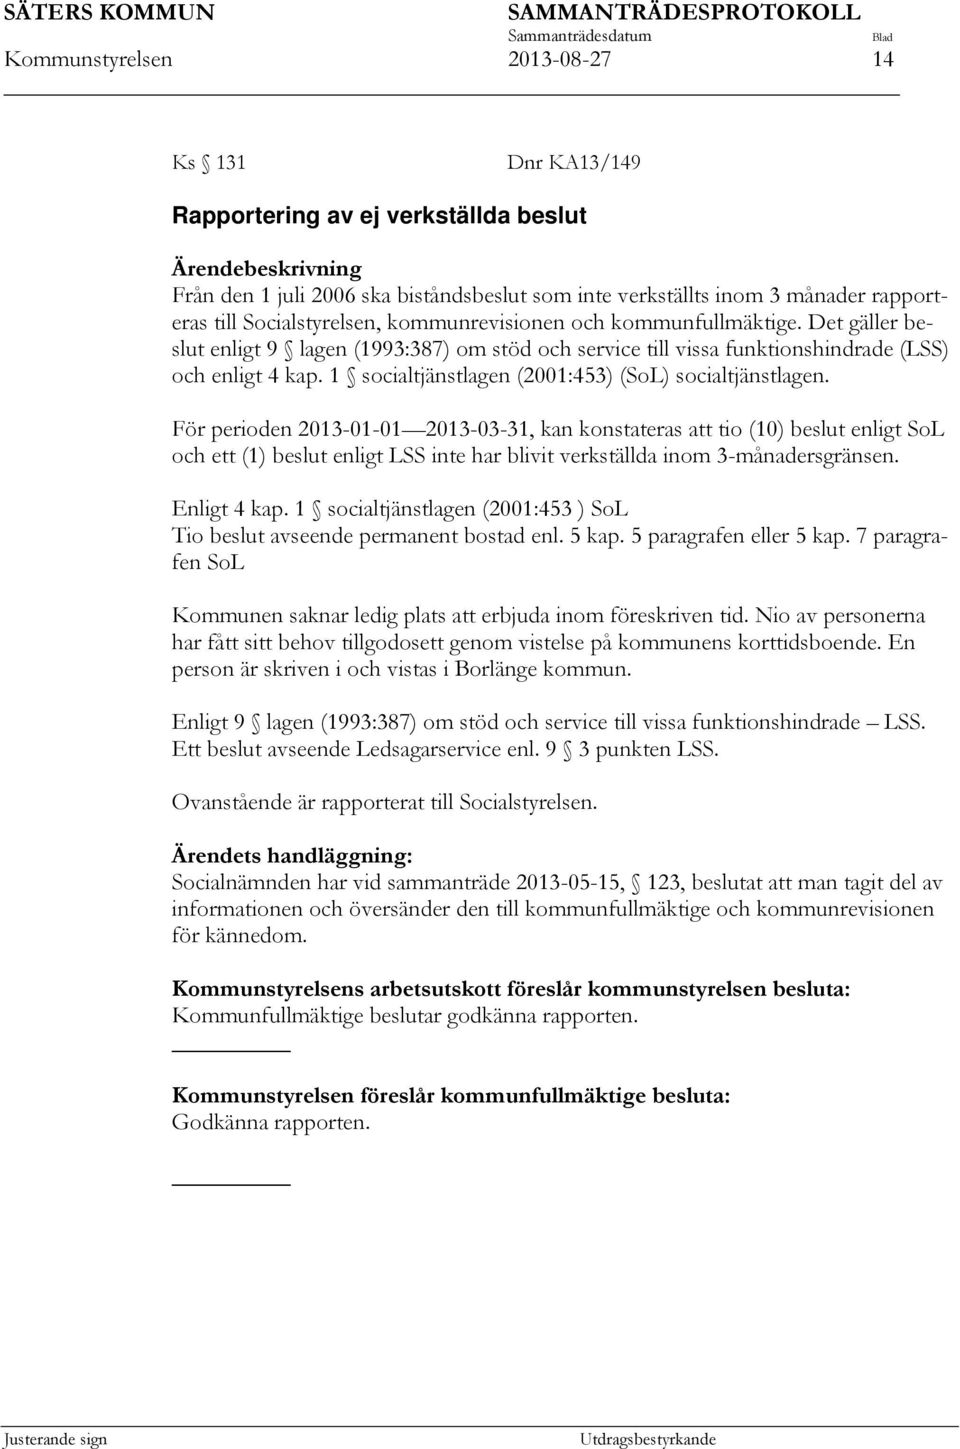 1 socialtjänstlagen (2001:453) (SoL) socialtjänstlagen.